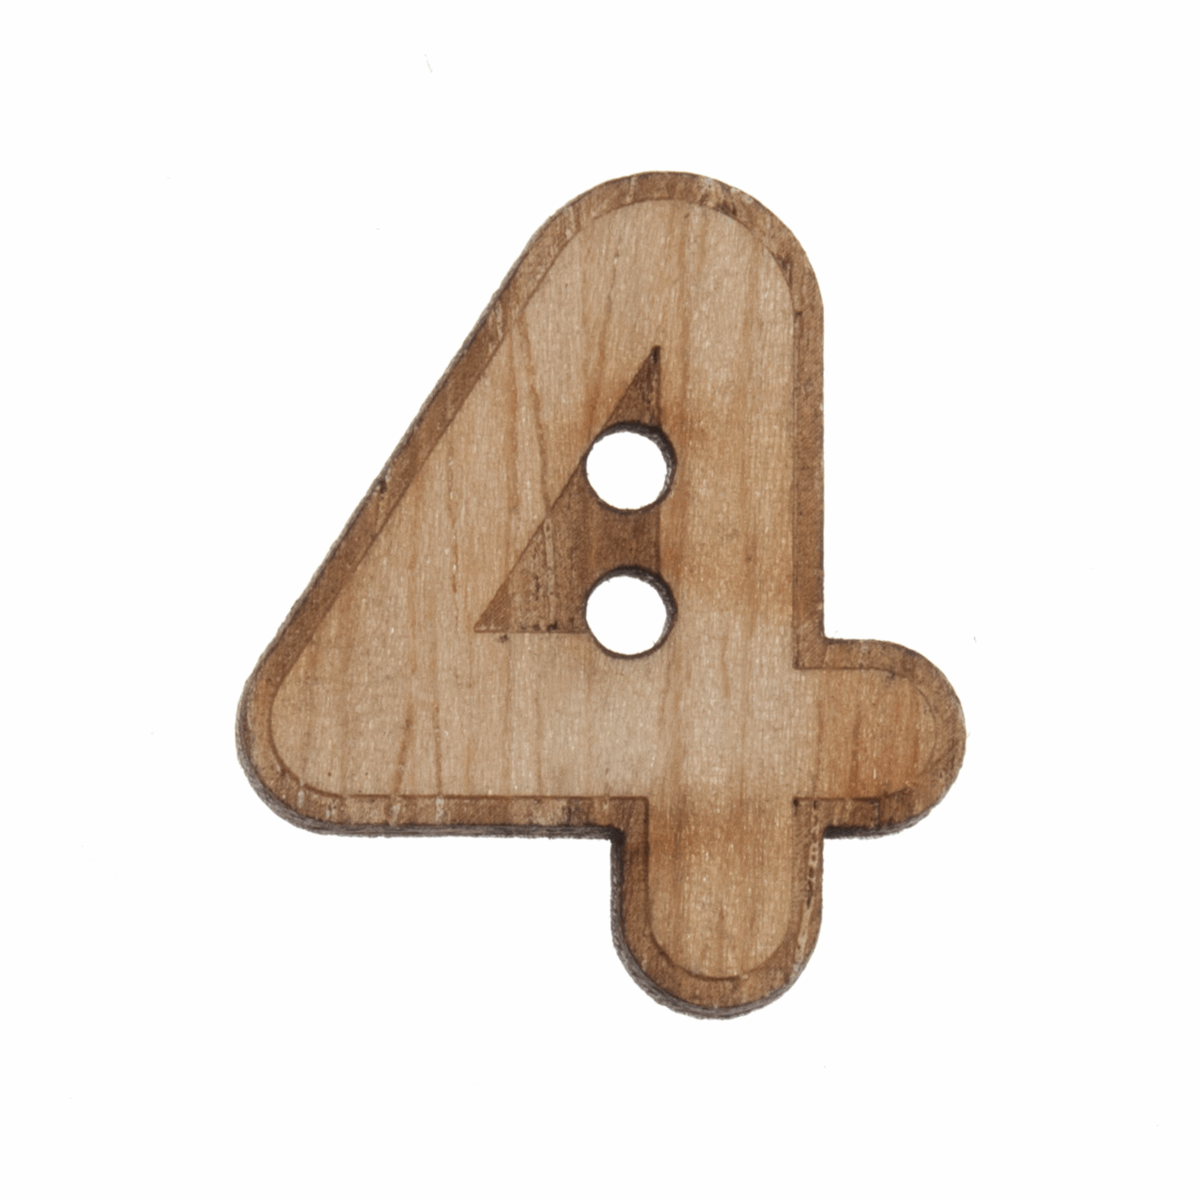 Trimits Wooden Number Button (4) - 22mm/35 lignes